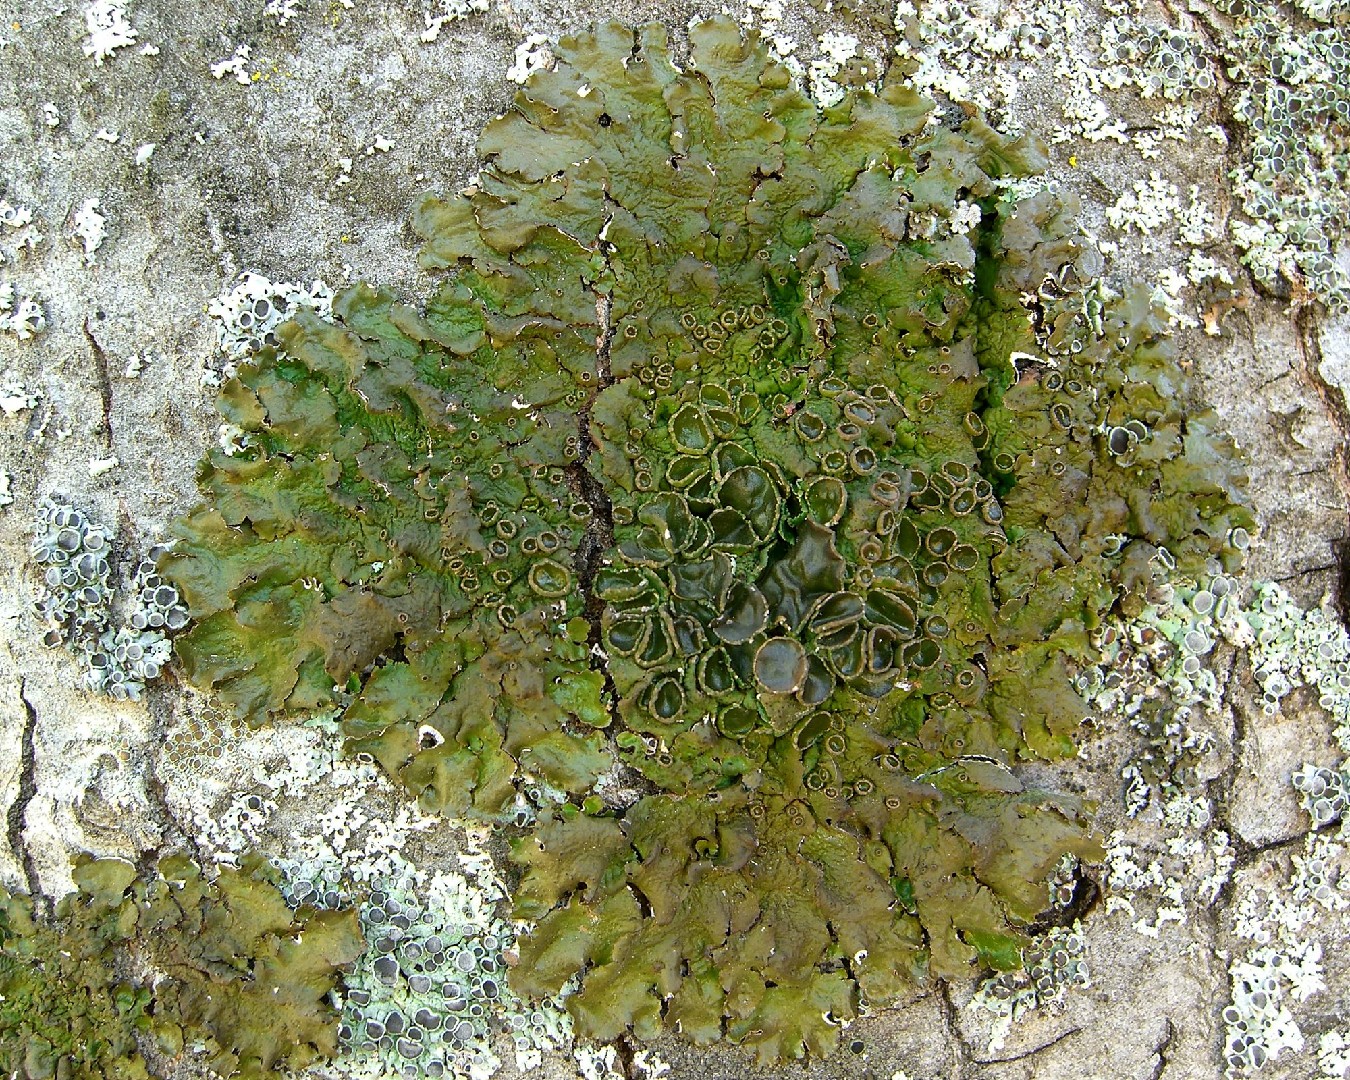 California camouflage lichen